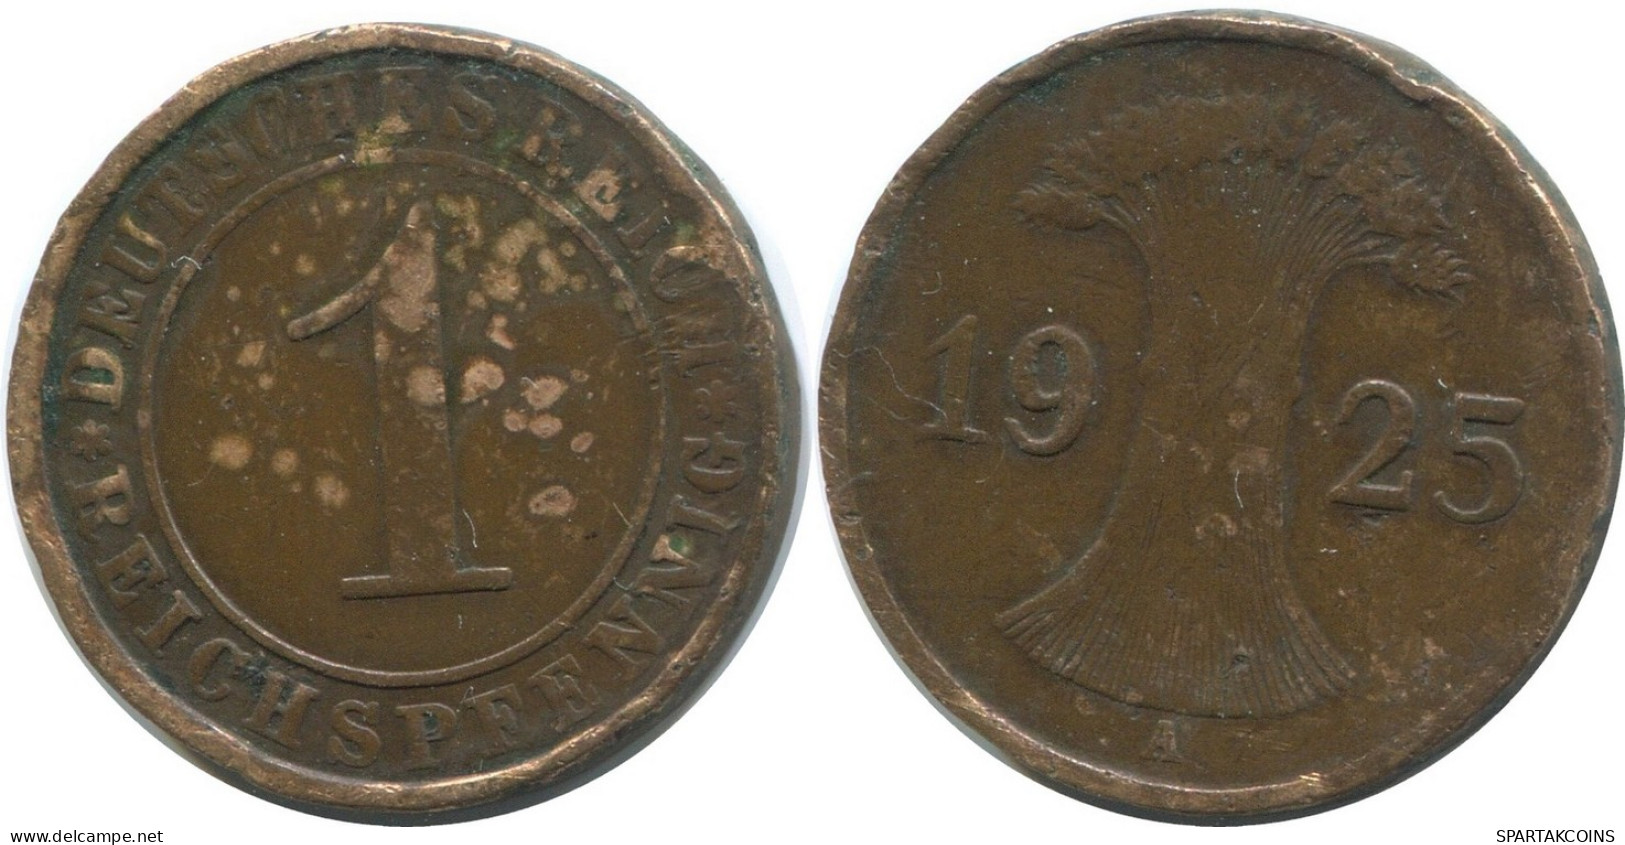 1 REICHSPFENNIG 1925 A GERMANY Coin #AD434.9.U - 1 Renten- & 1 Reichspfennig